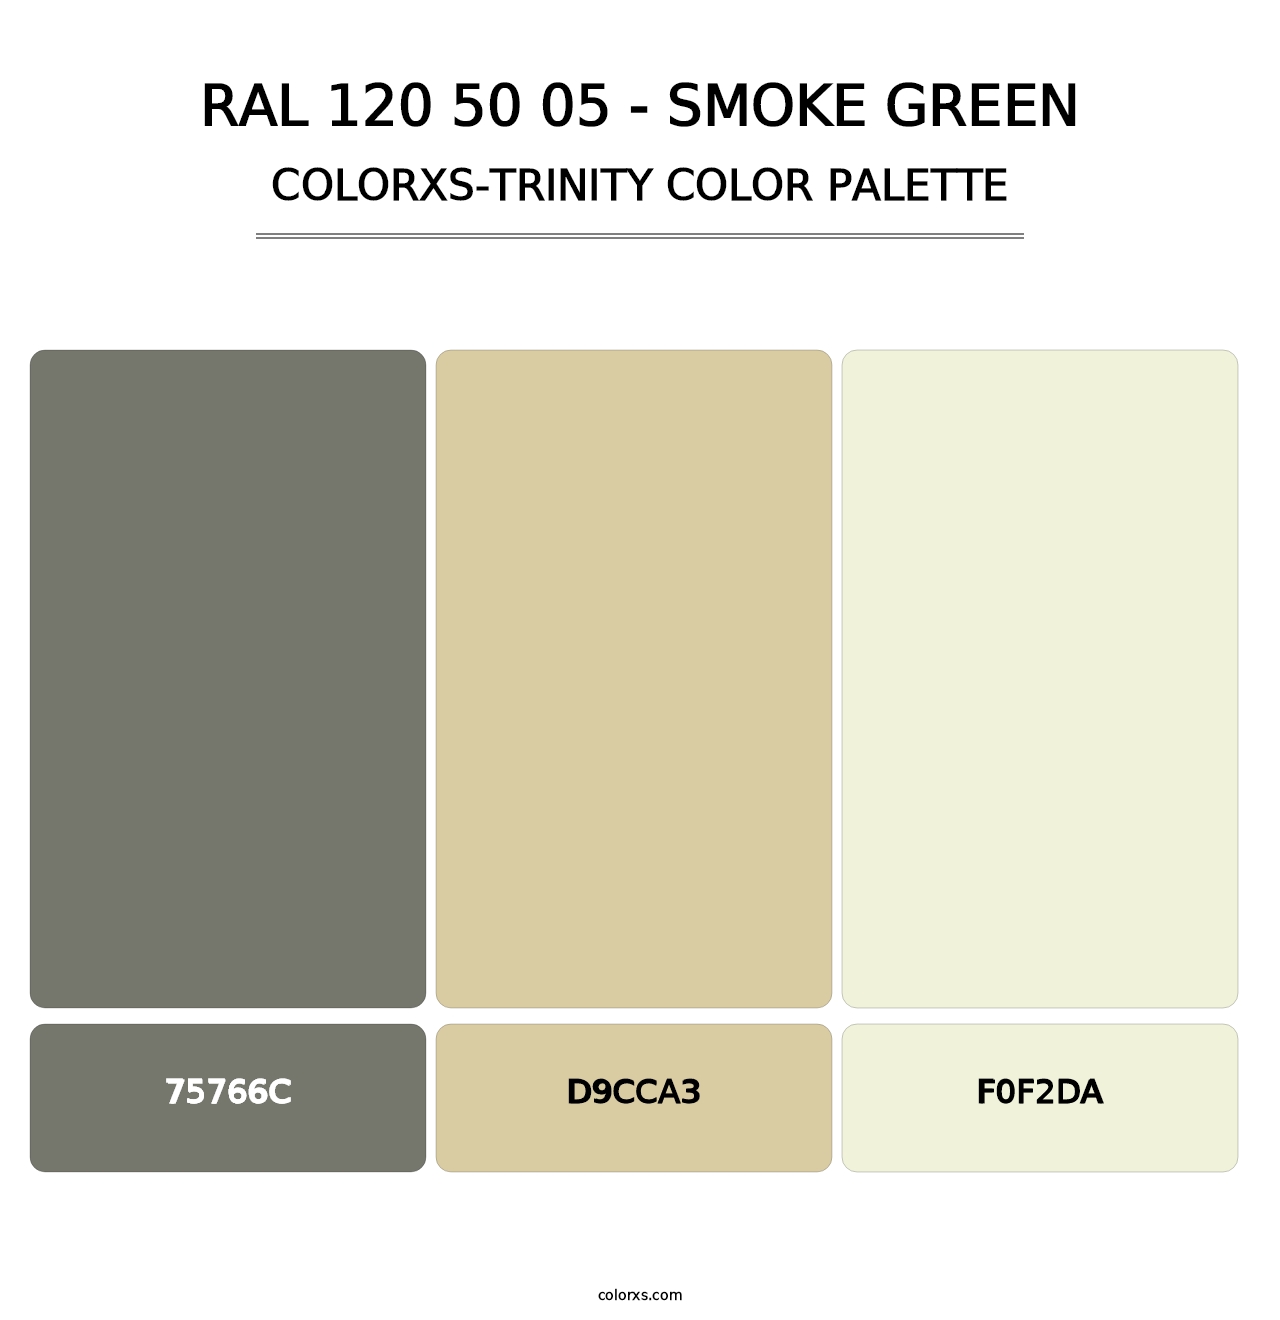 RAL 120 50 05 - Smoke Green - Colorxs Trinity Palette